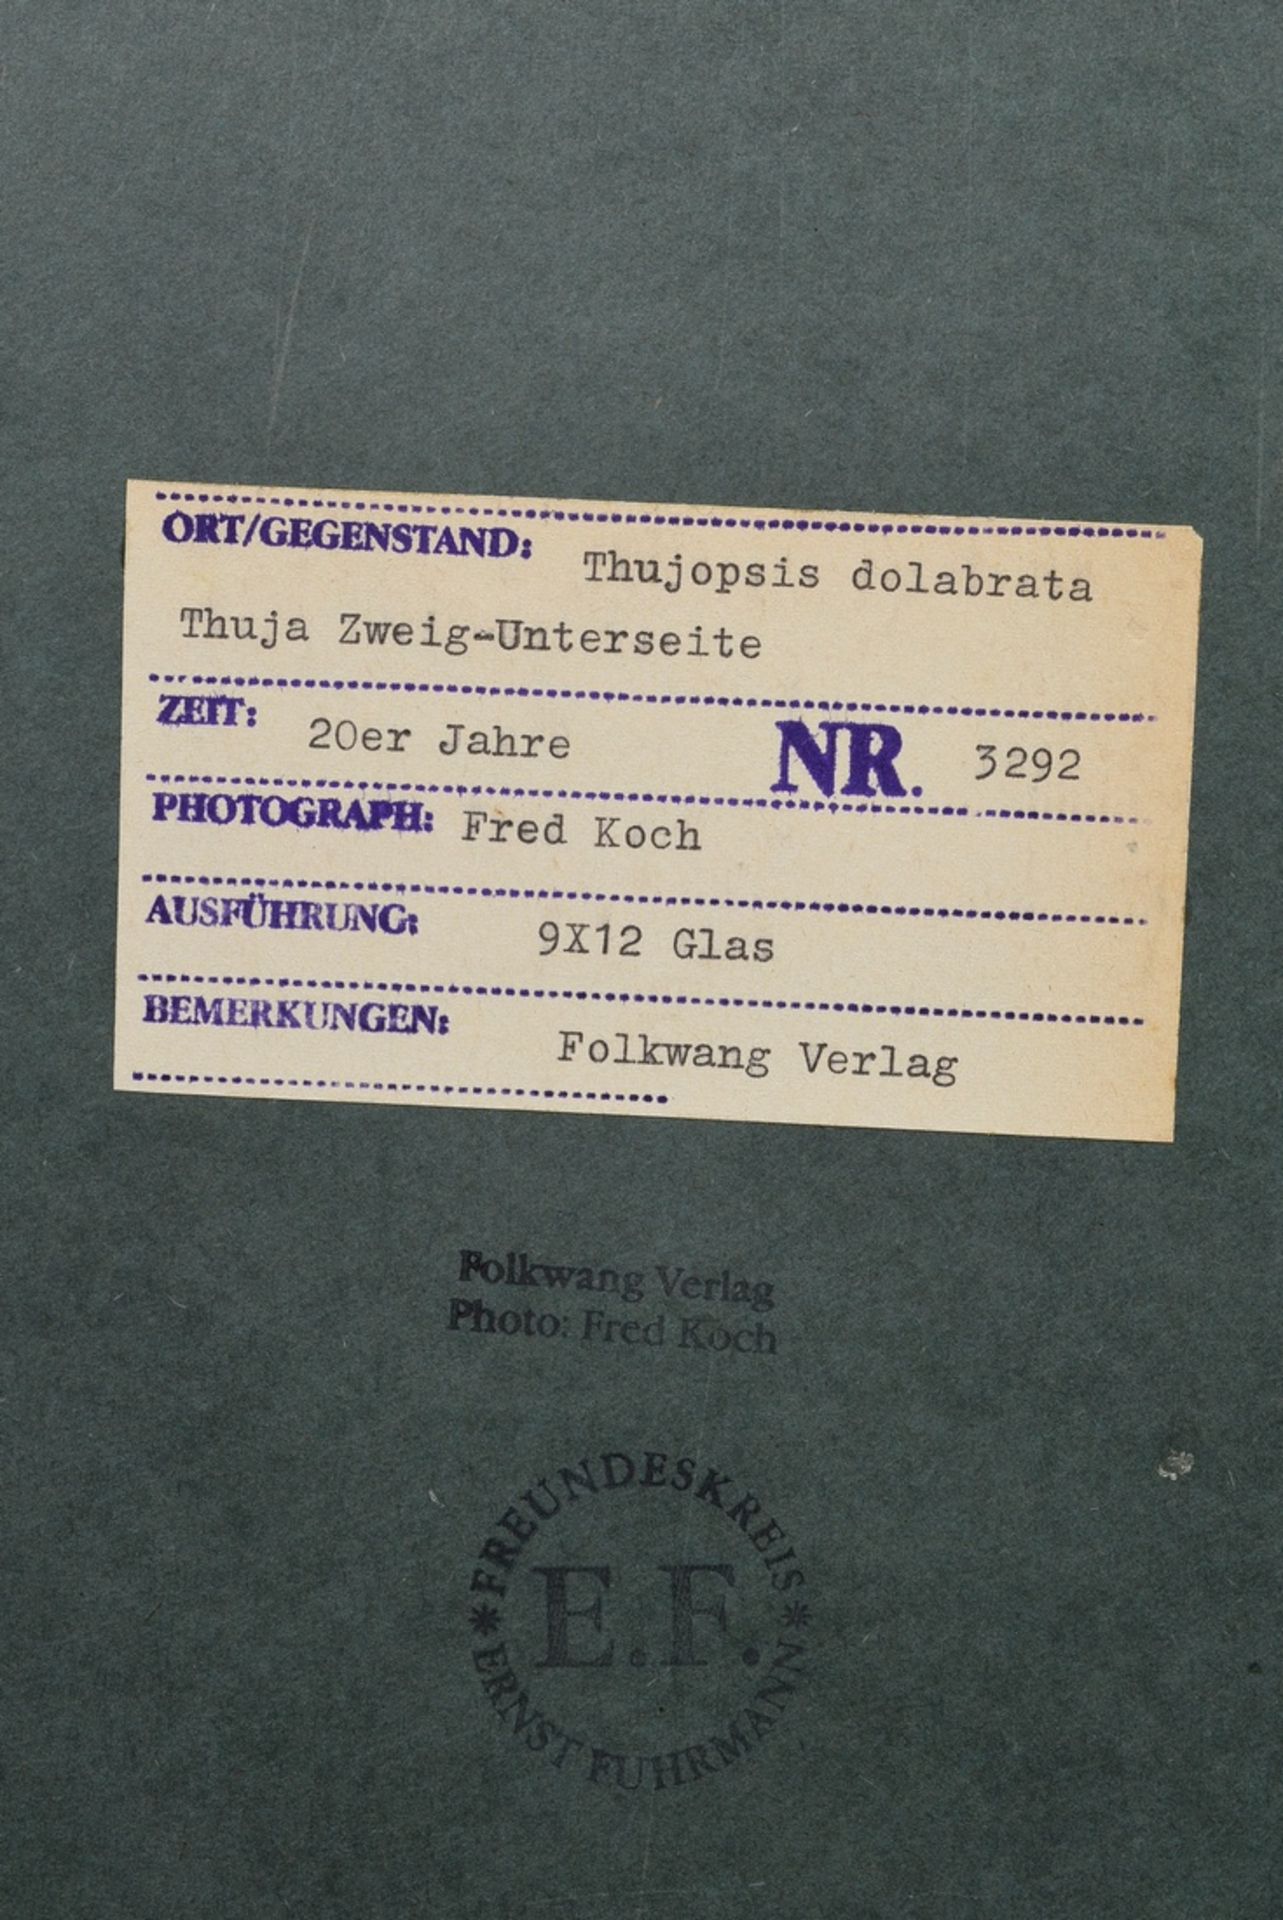 Koch, Fred (1904-1947) "Thujopsis dolabrata, Thuja Zweig-Unterseite", Fotografie auf Karton montier - Bild 2 aus 2